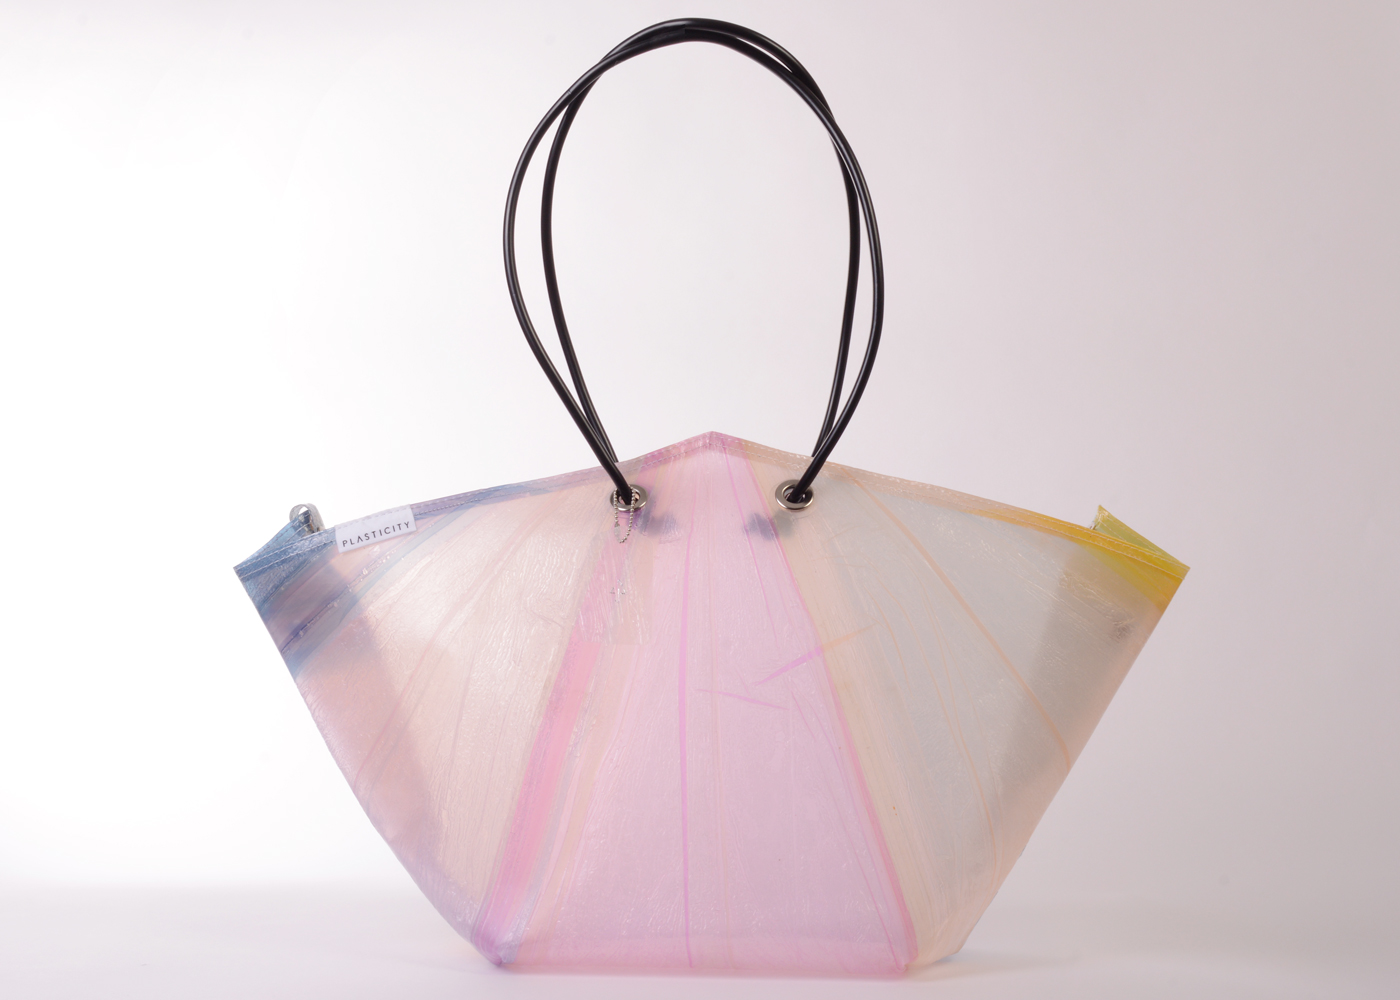 世界初 捨てられたビニール傘をアップサイクルする Plasticity カラー傘を使ったトートバッグを新発売 Newscast